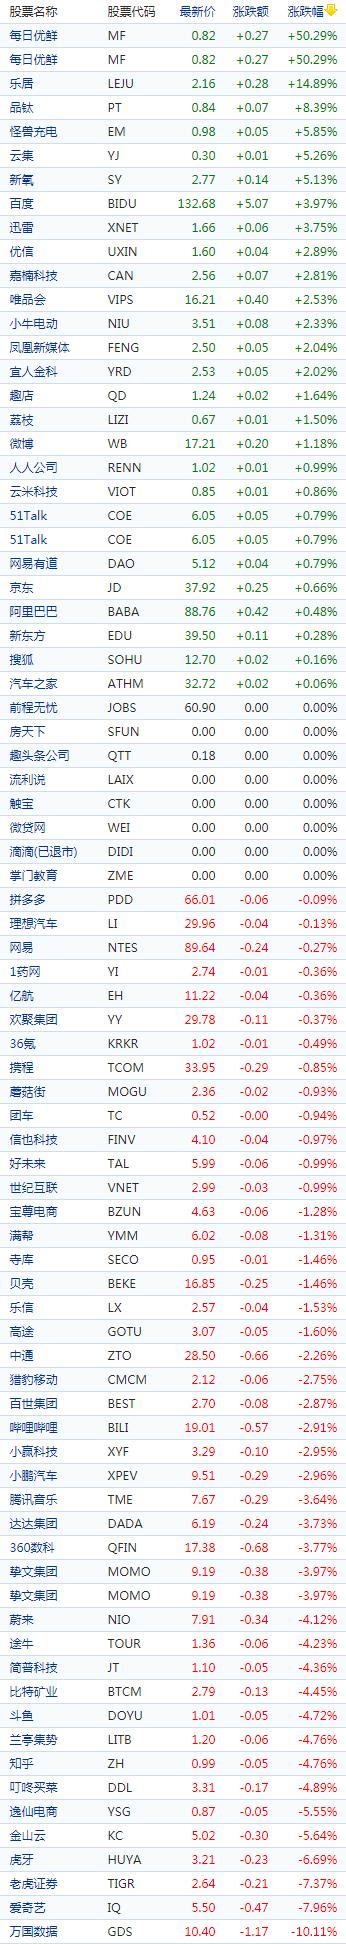 中国概念股收盘：每日优鲜大涨50%，爱奇艺跌逾7%、虎牙跌超6%